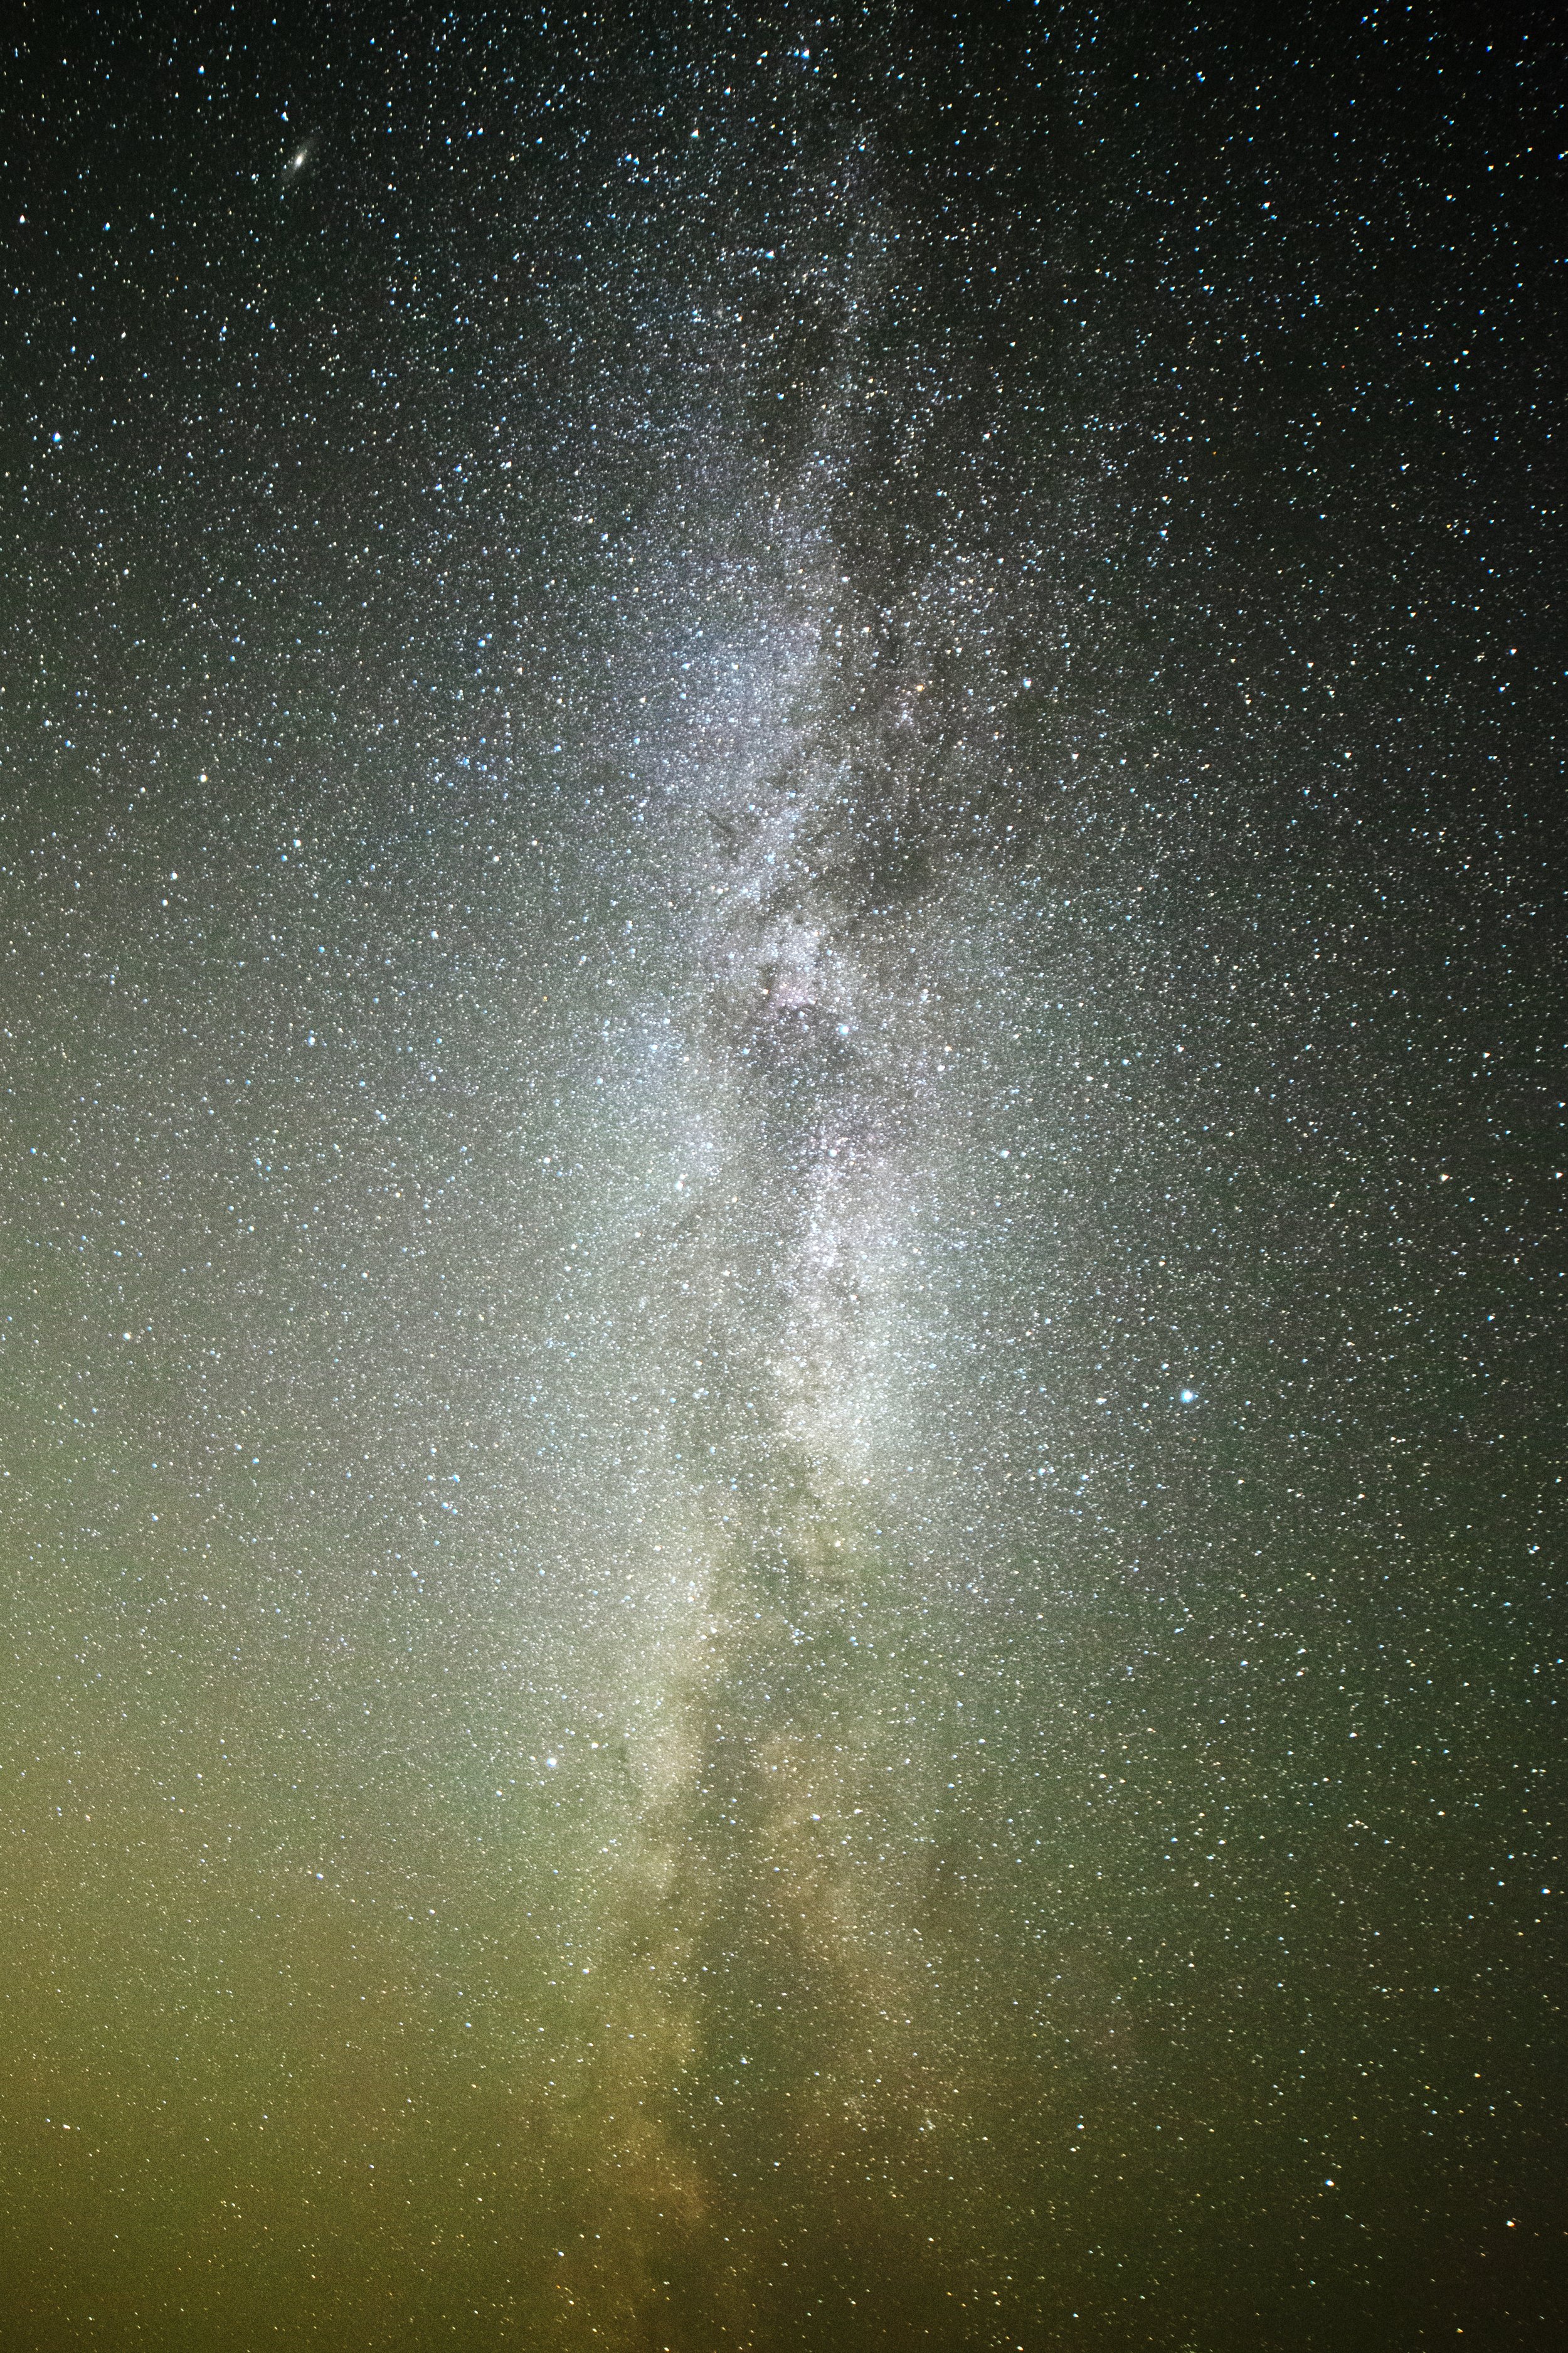 AST010 - The Final Frontier, Milky Way.jpg